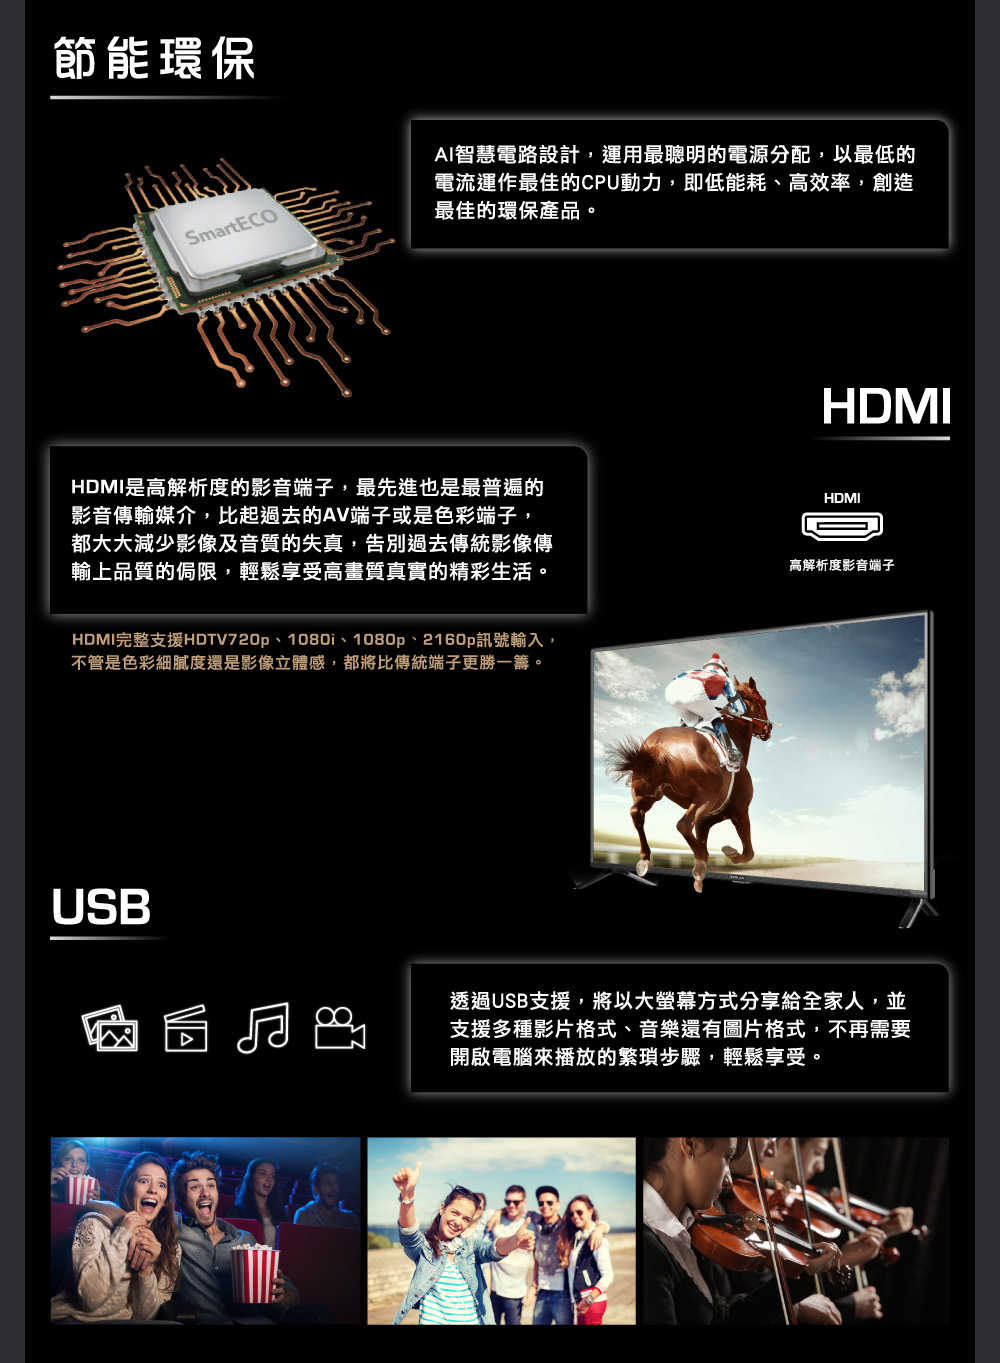 【HERAN 禾聯】65 吋 4K數位液晶顯示器 螢幕 杜比音效 無邊框設計 HD-65MG1